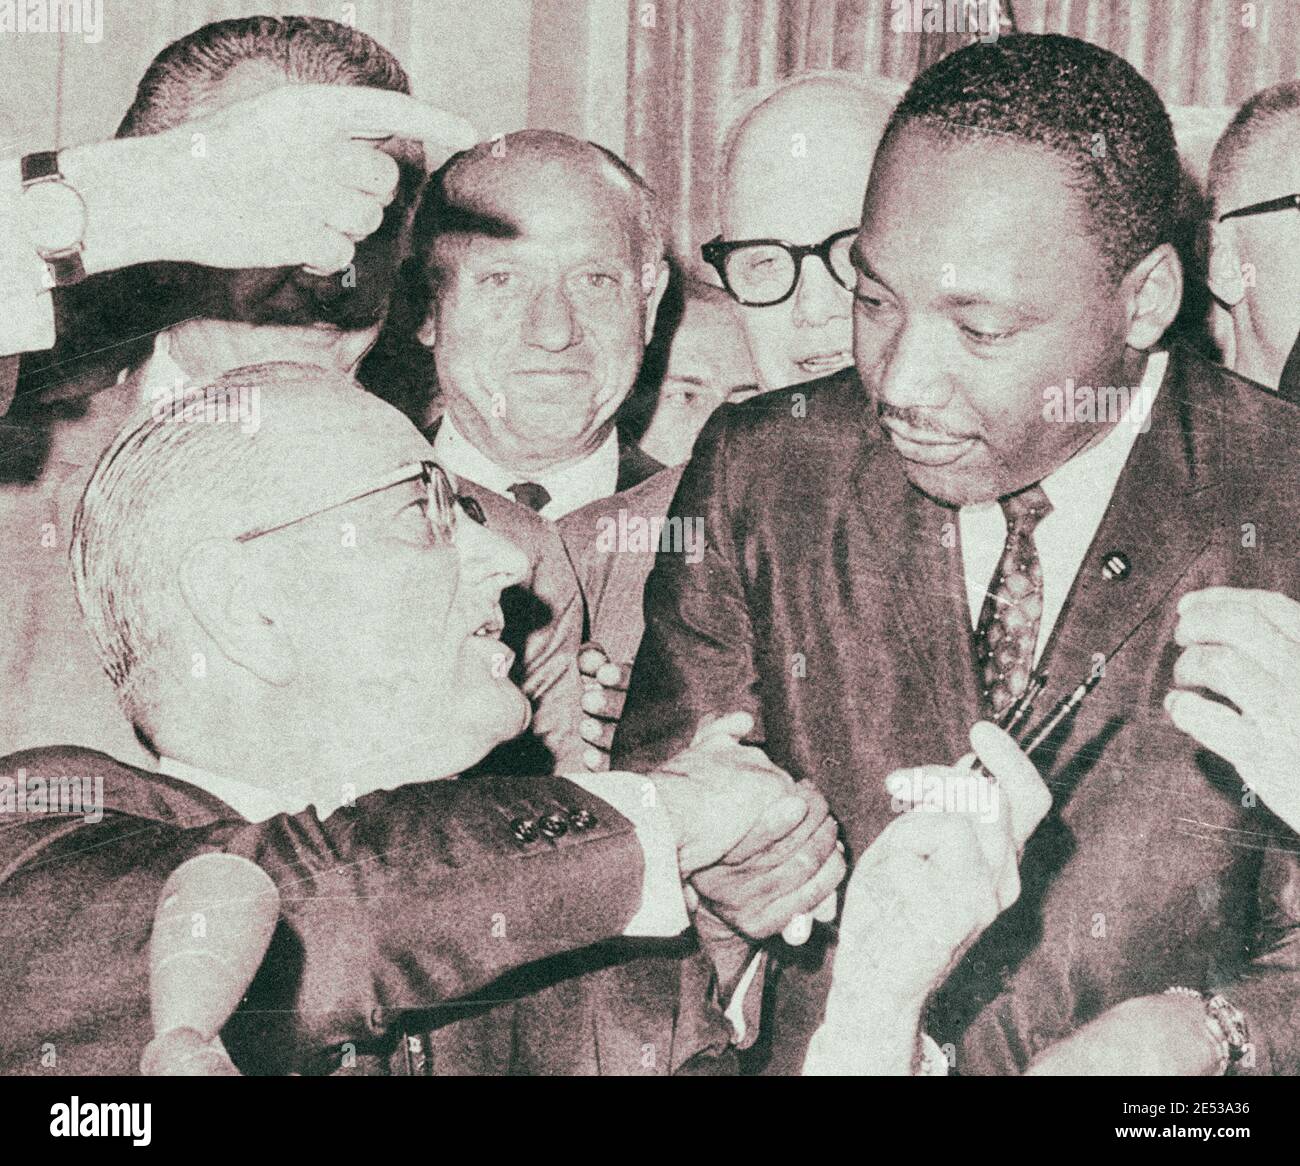 Präsident Lyndon Johnson schüttelt die Hände mit Reverend Martin Luther King, Jr., am 3. Juli 1964 in Washington, District of Columbia, nachdem er ihm ein Stockfoto